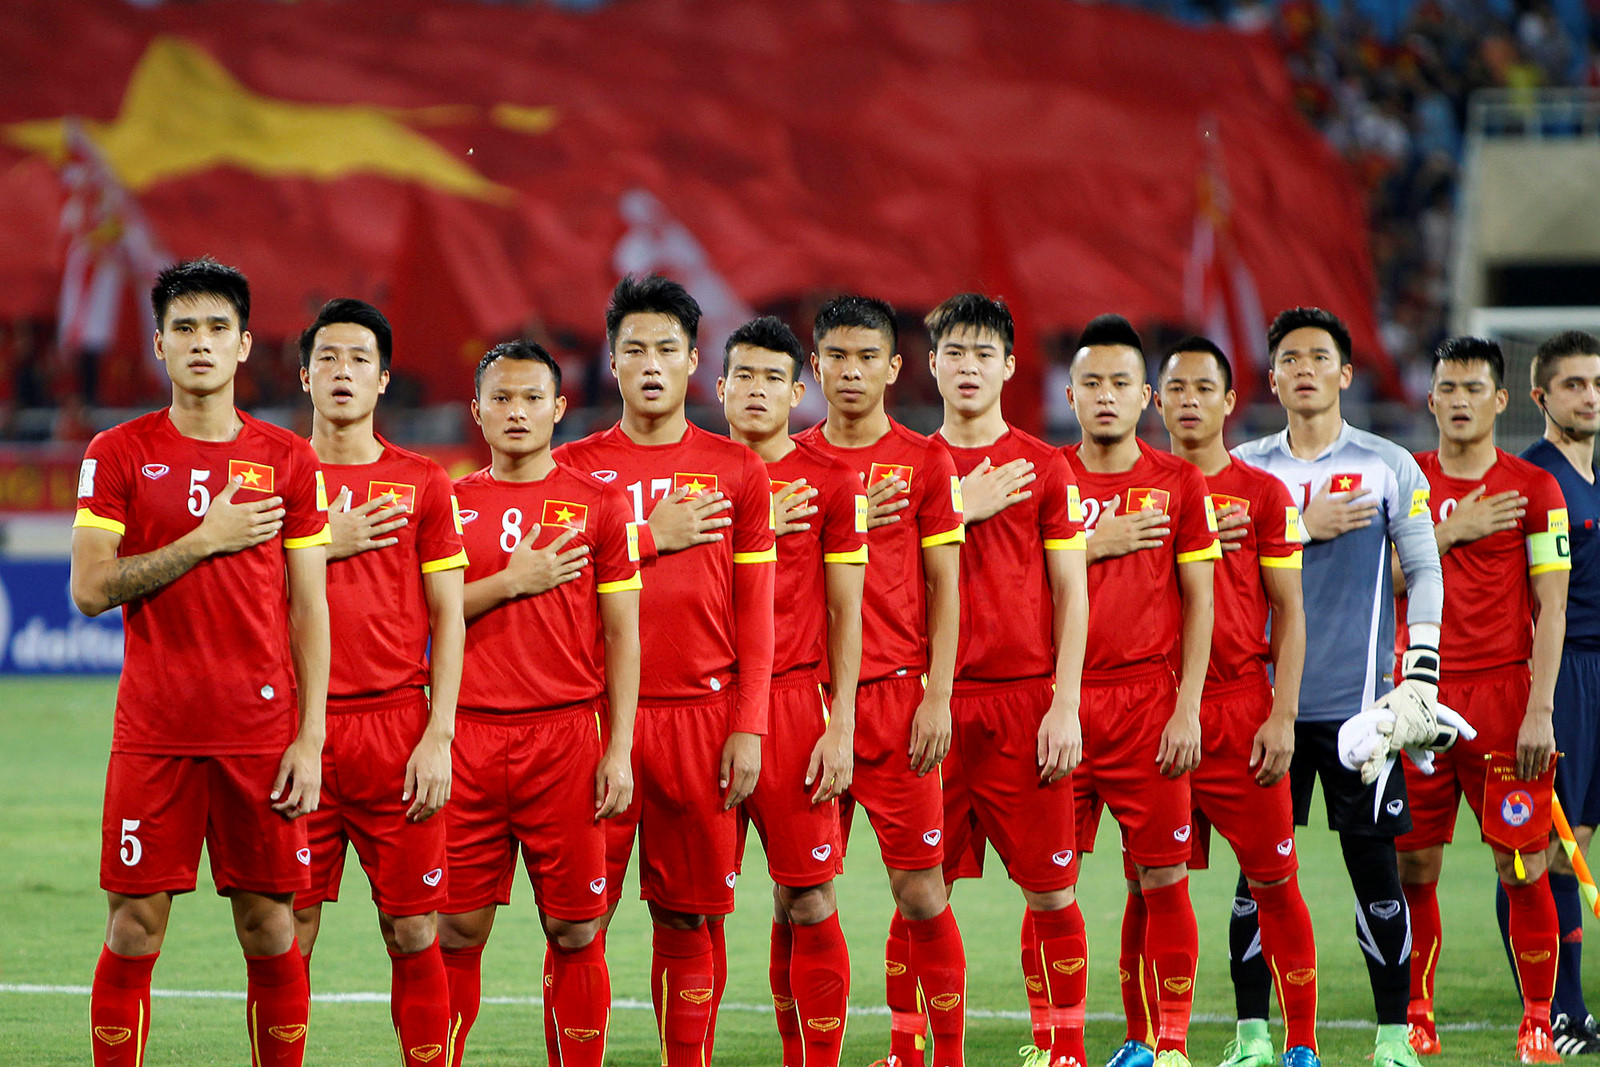 Sau địa chấn Châu Á, U23 & ĐT Việt Nam sẽ đá những giải nào?